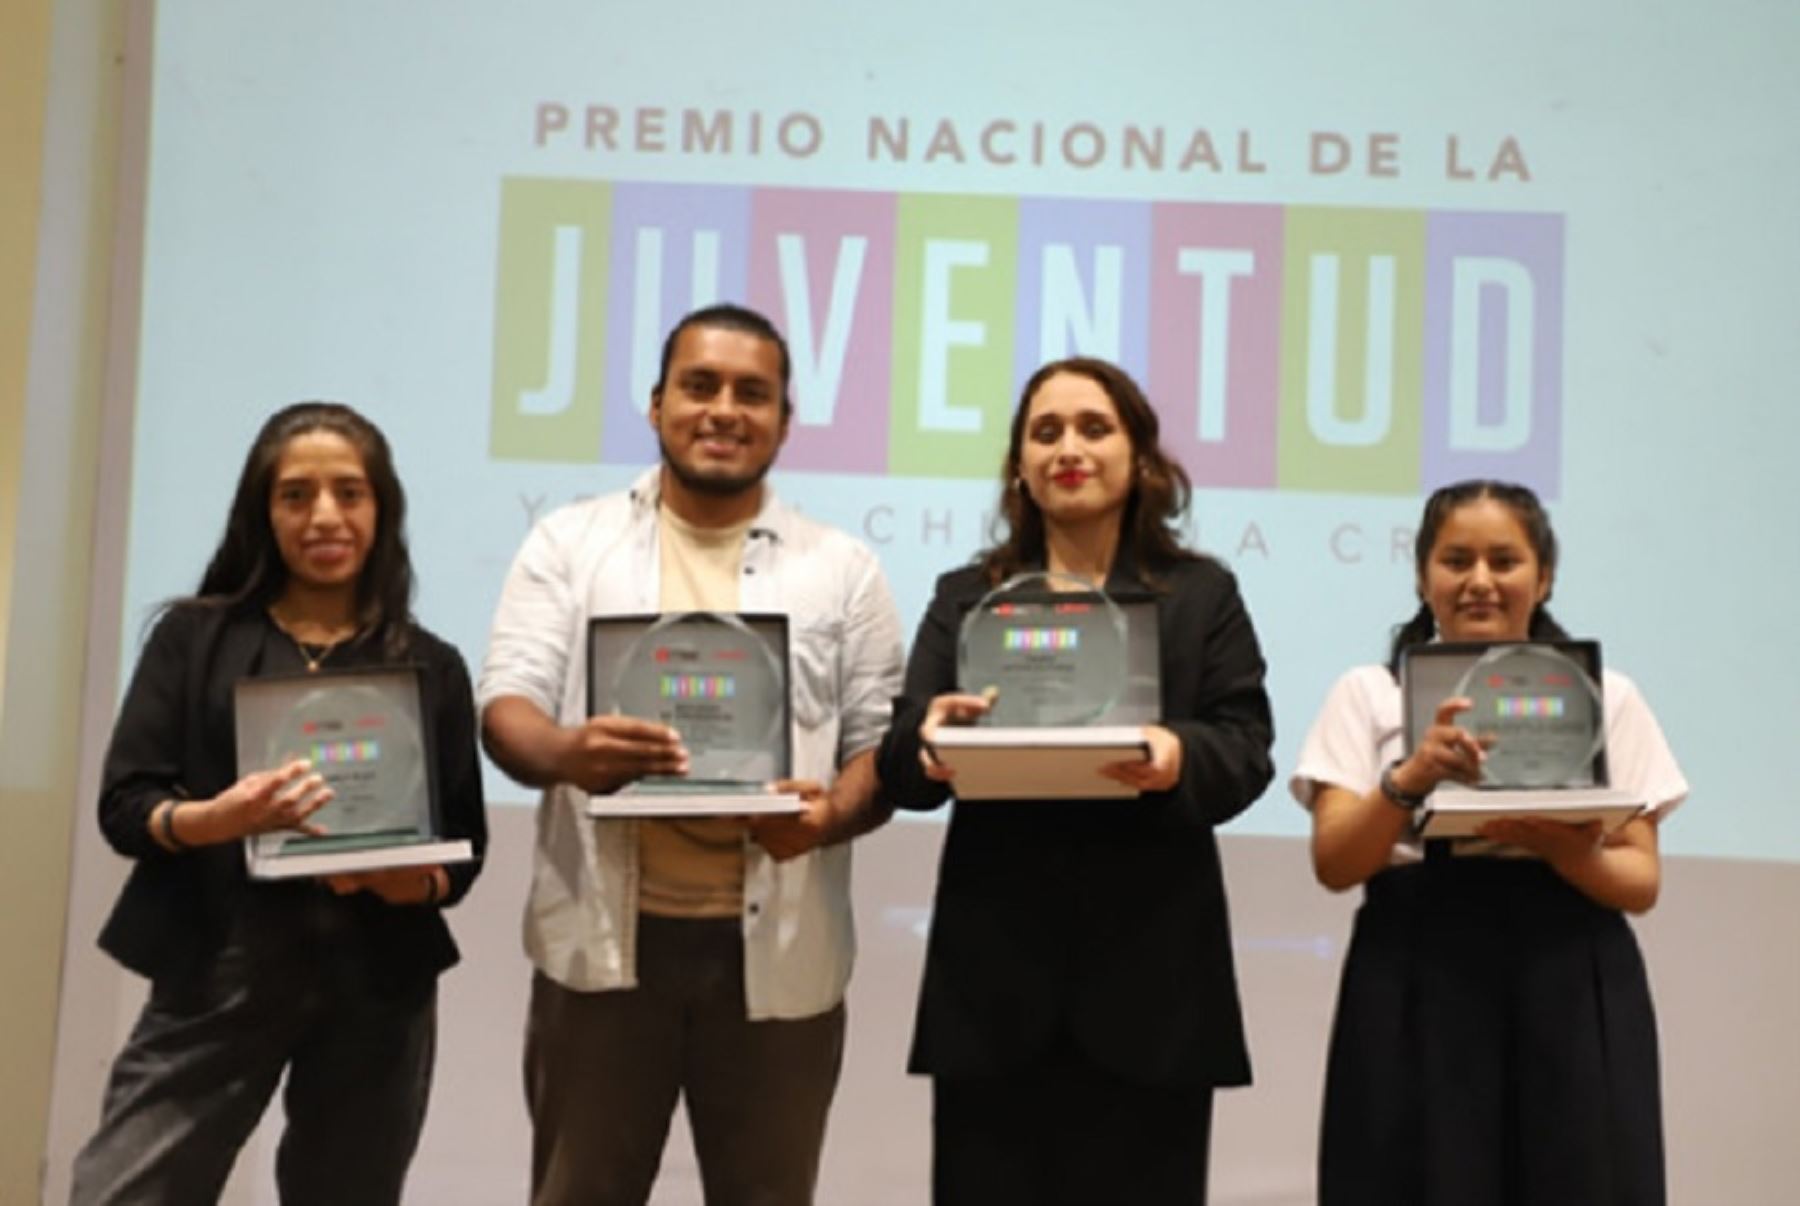 Proyectos de regiones Lambayeque y Lima ganan Premio Nacional de la Juventud